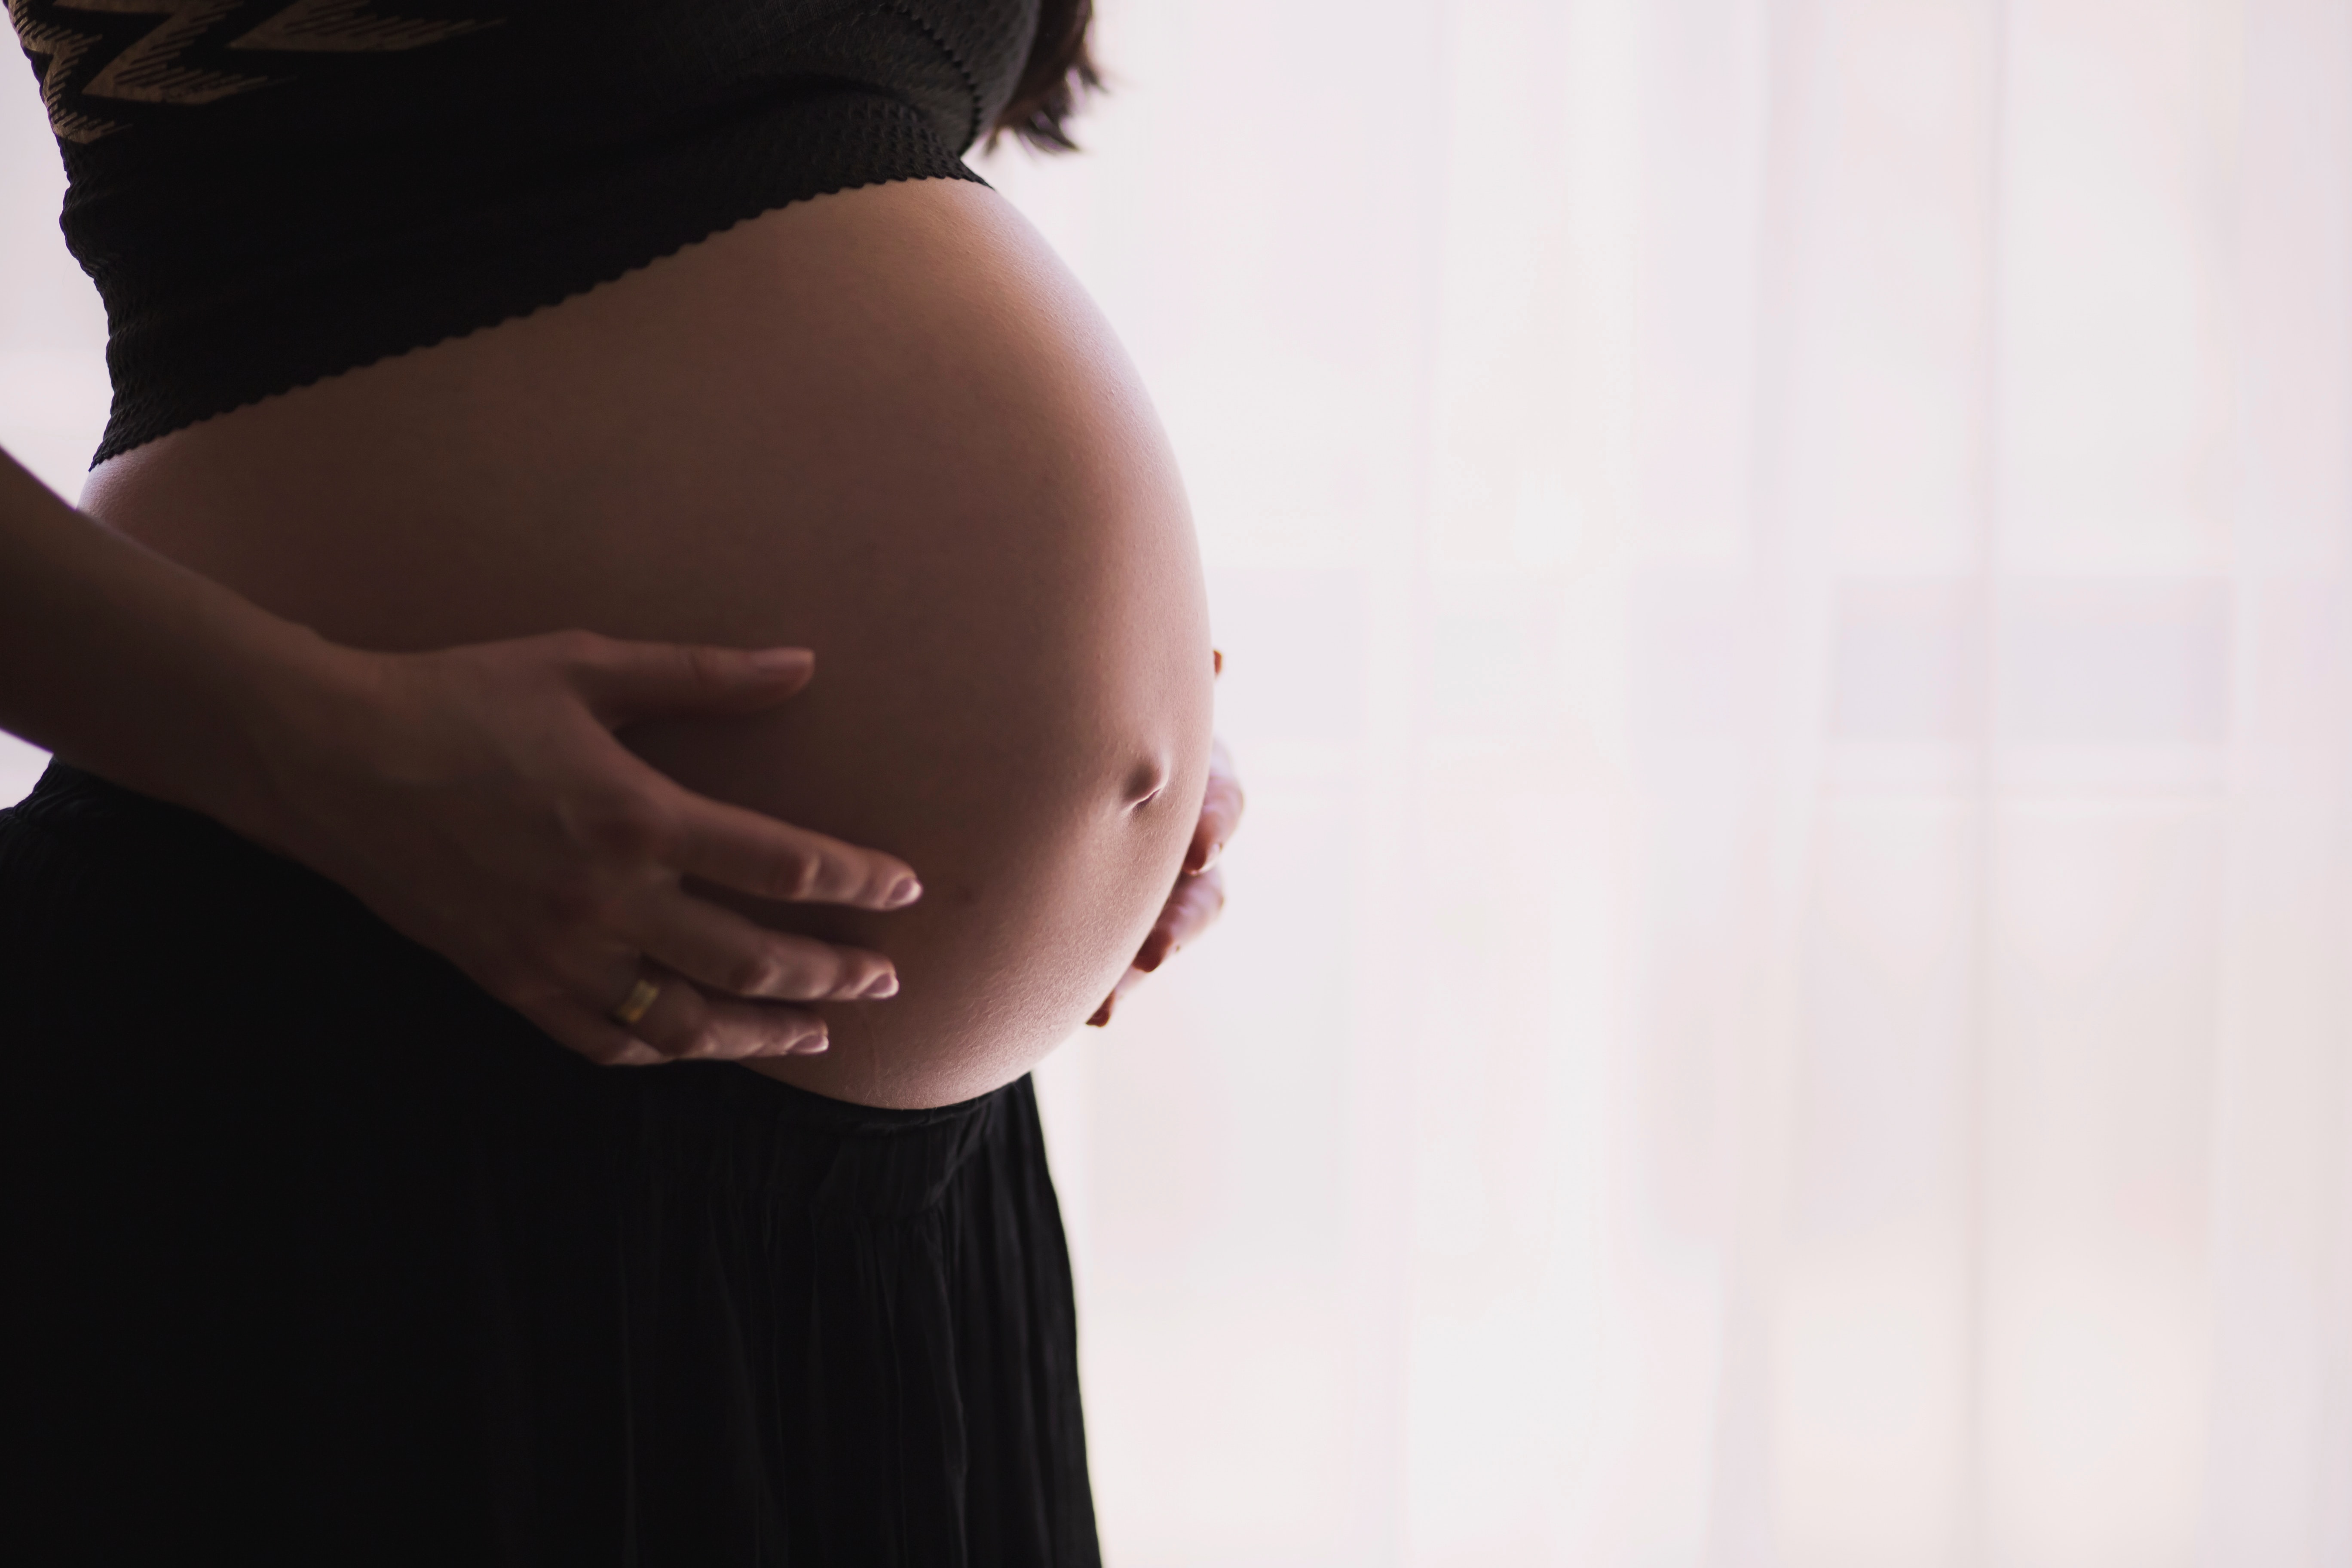 임신 중 몸의 변화 및 검사 3단계와 임신 기간 동안 건강한 삶의 시작 : 10가지 필수 건강 관리 방법